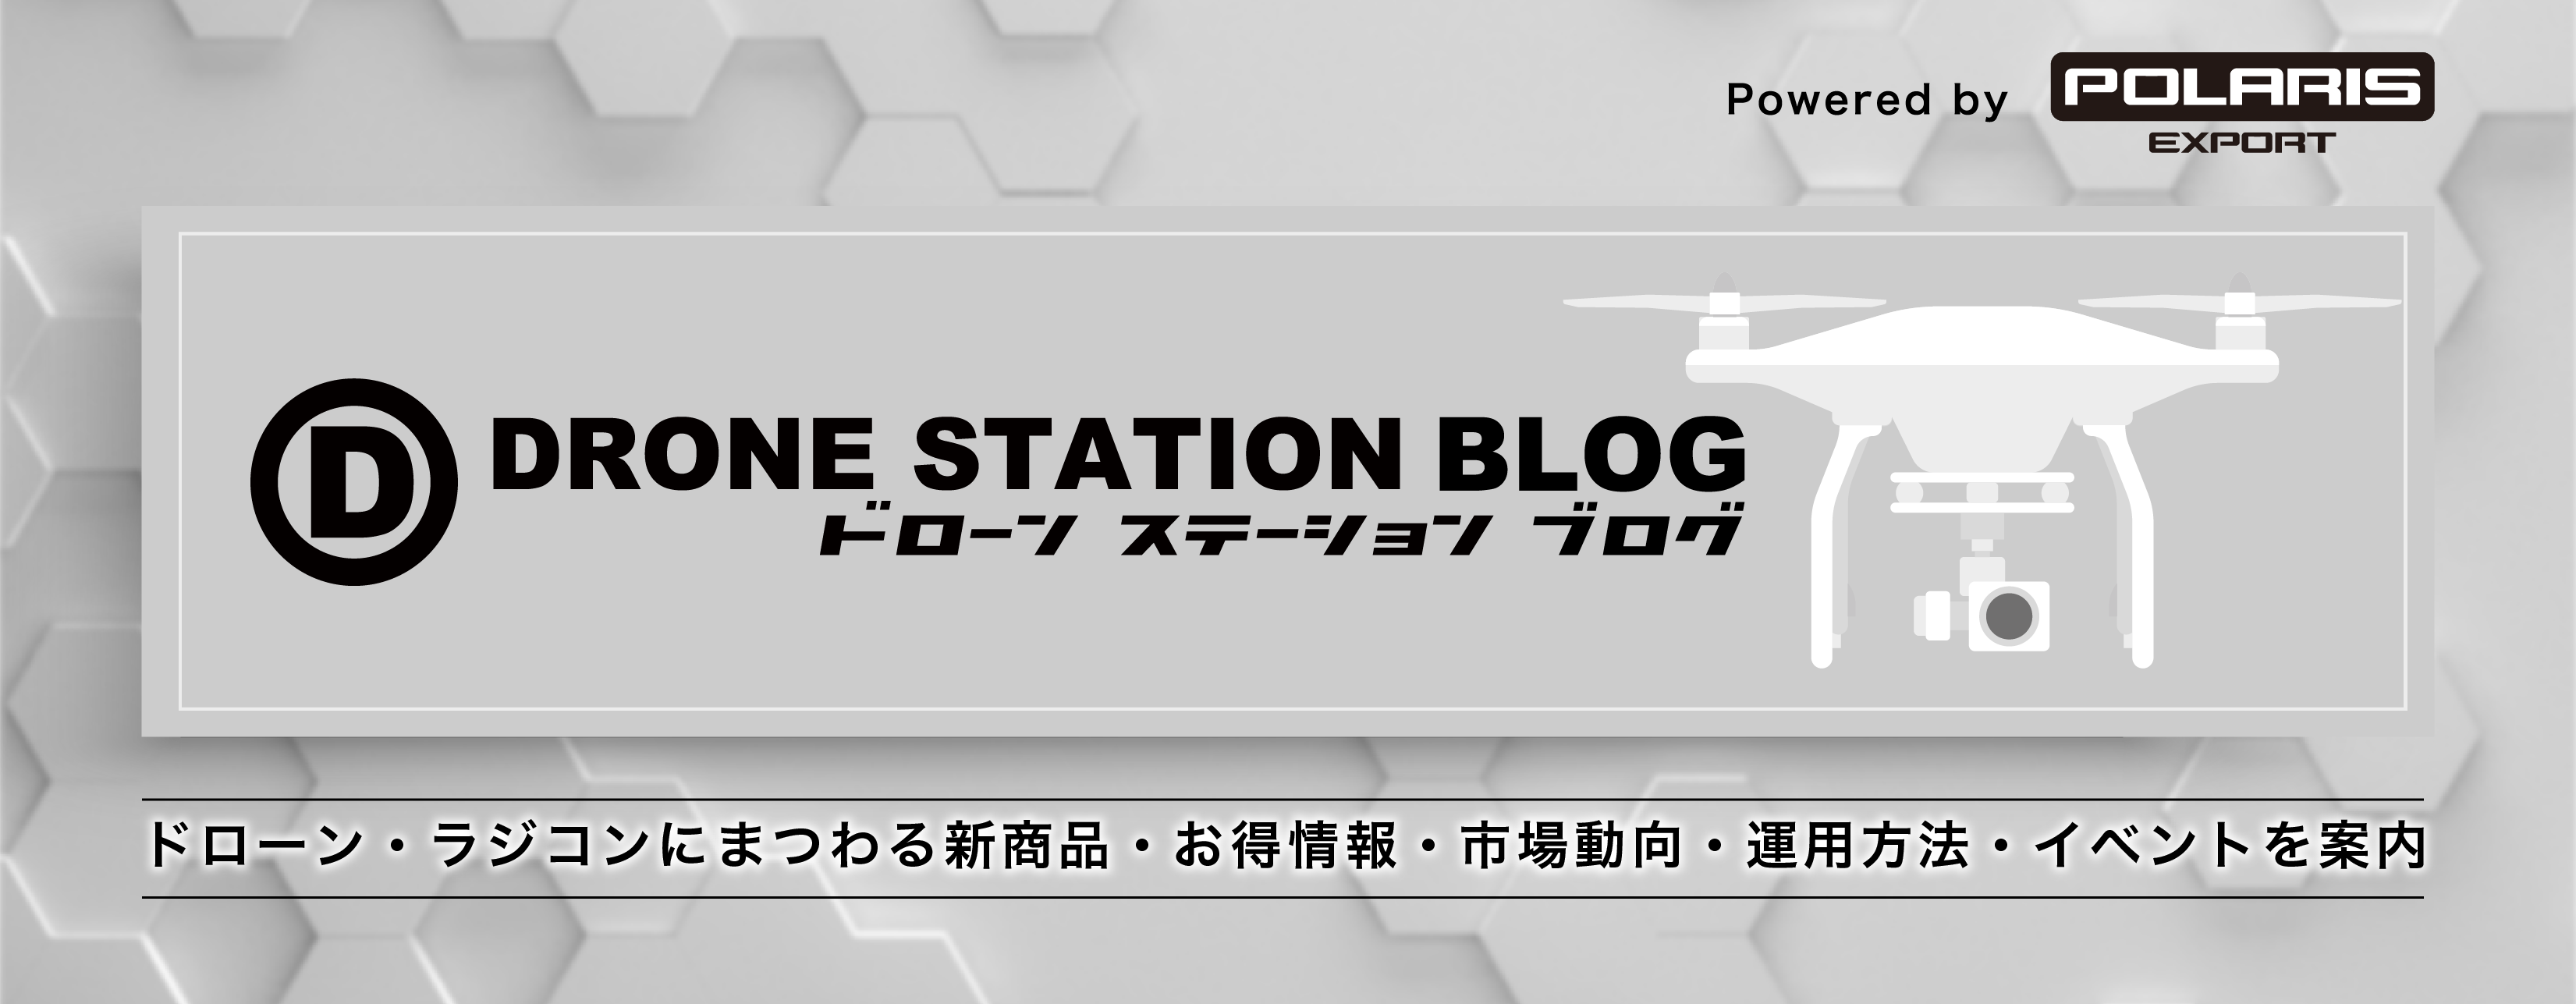 ドローンステーションブログ-Drone Station Blog-